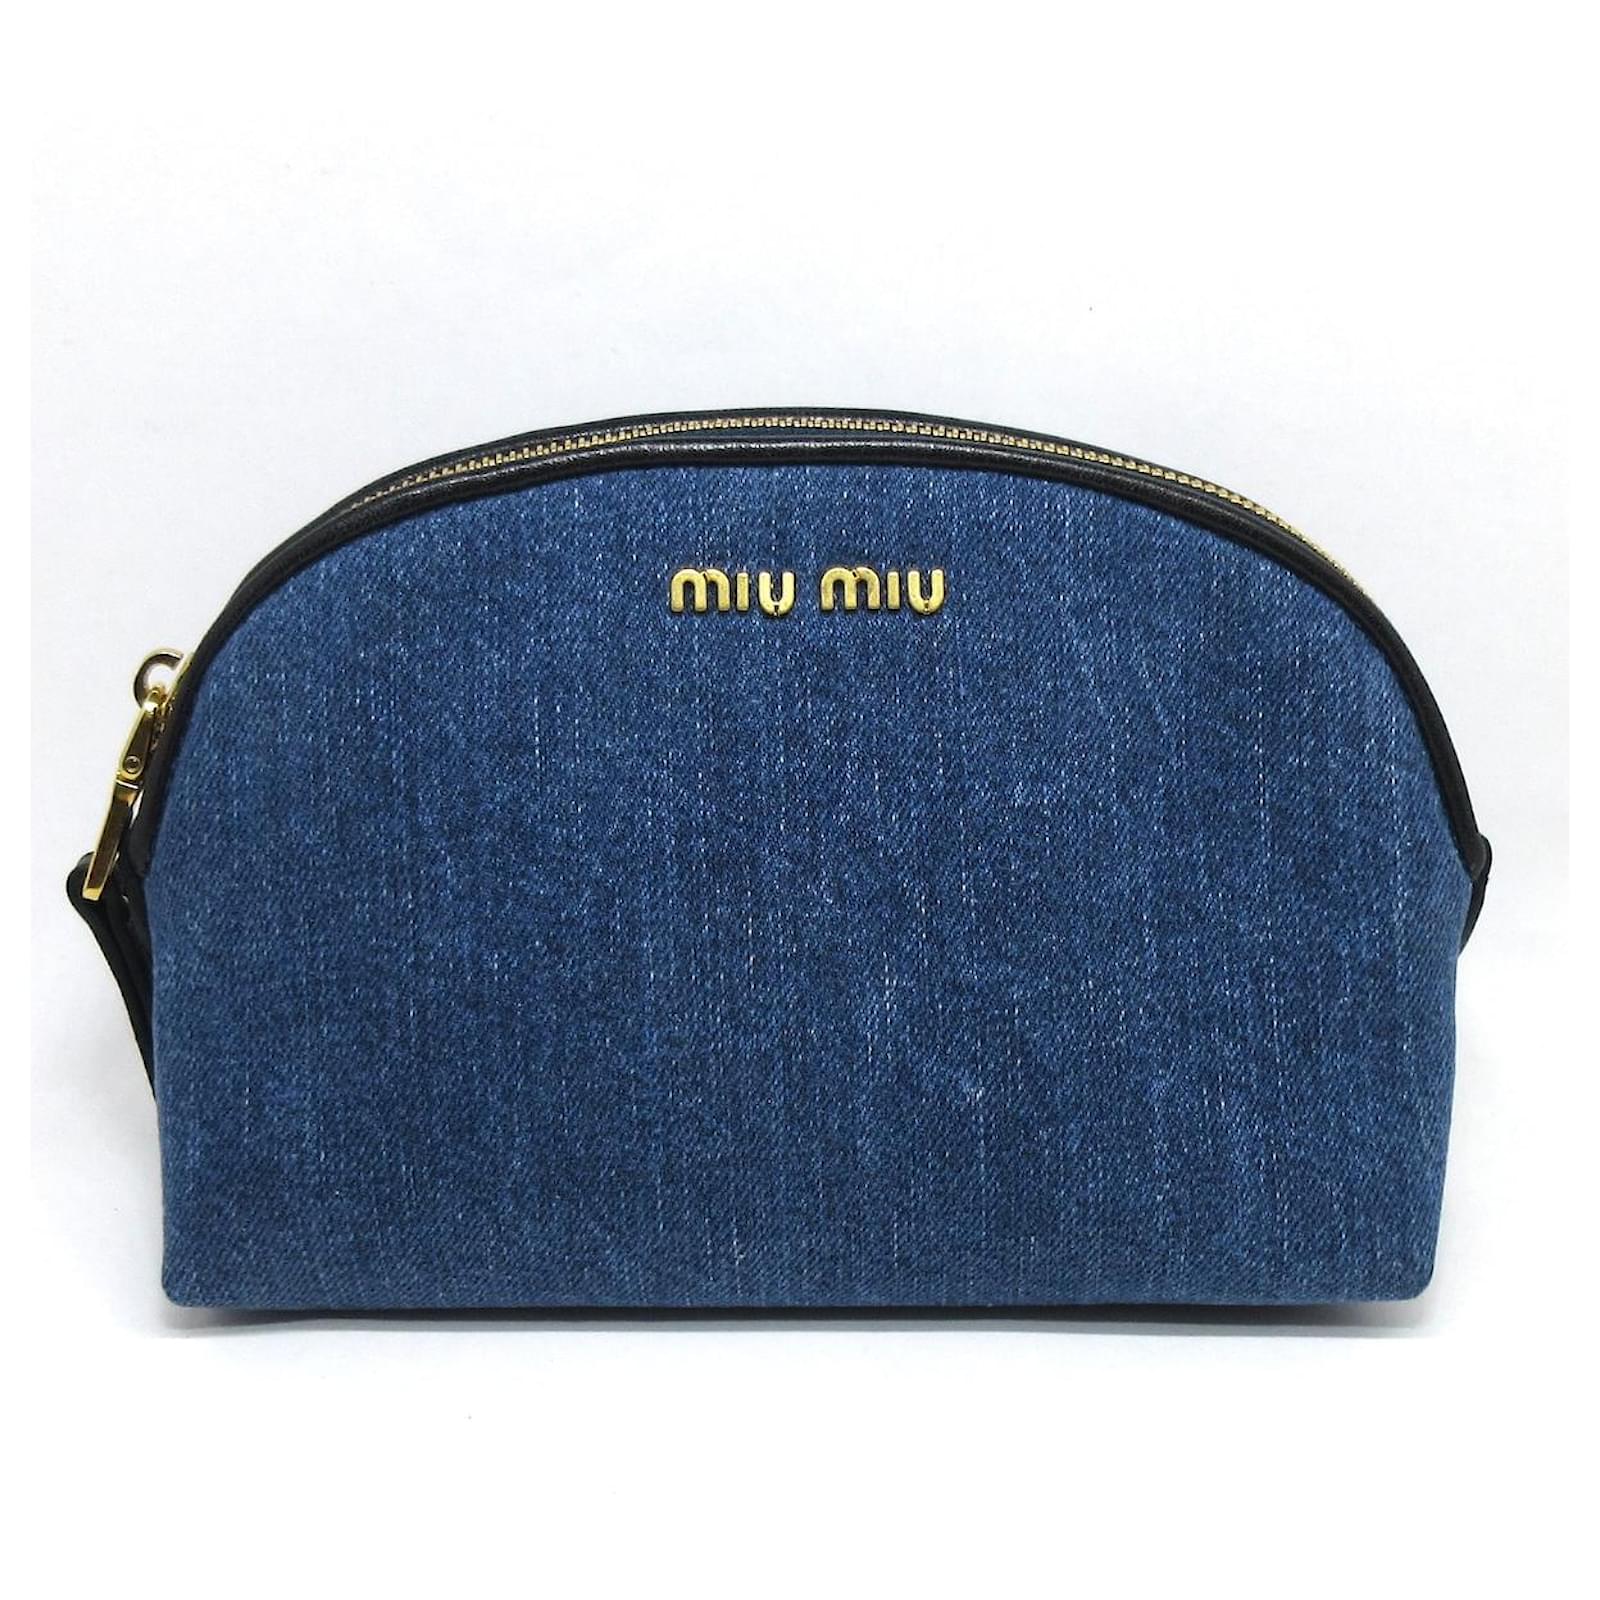 Miu Miu Denim Clutch in Blue